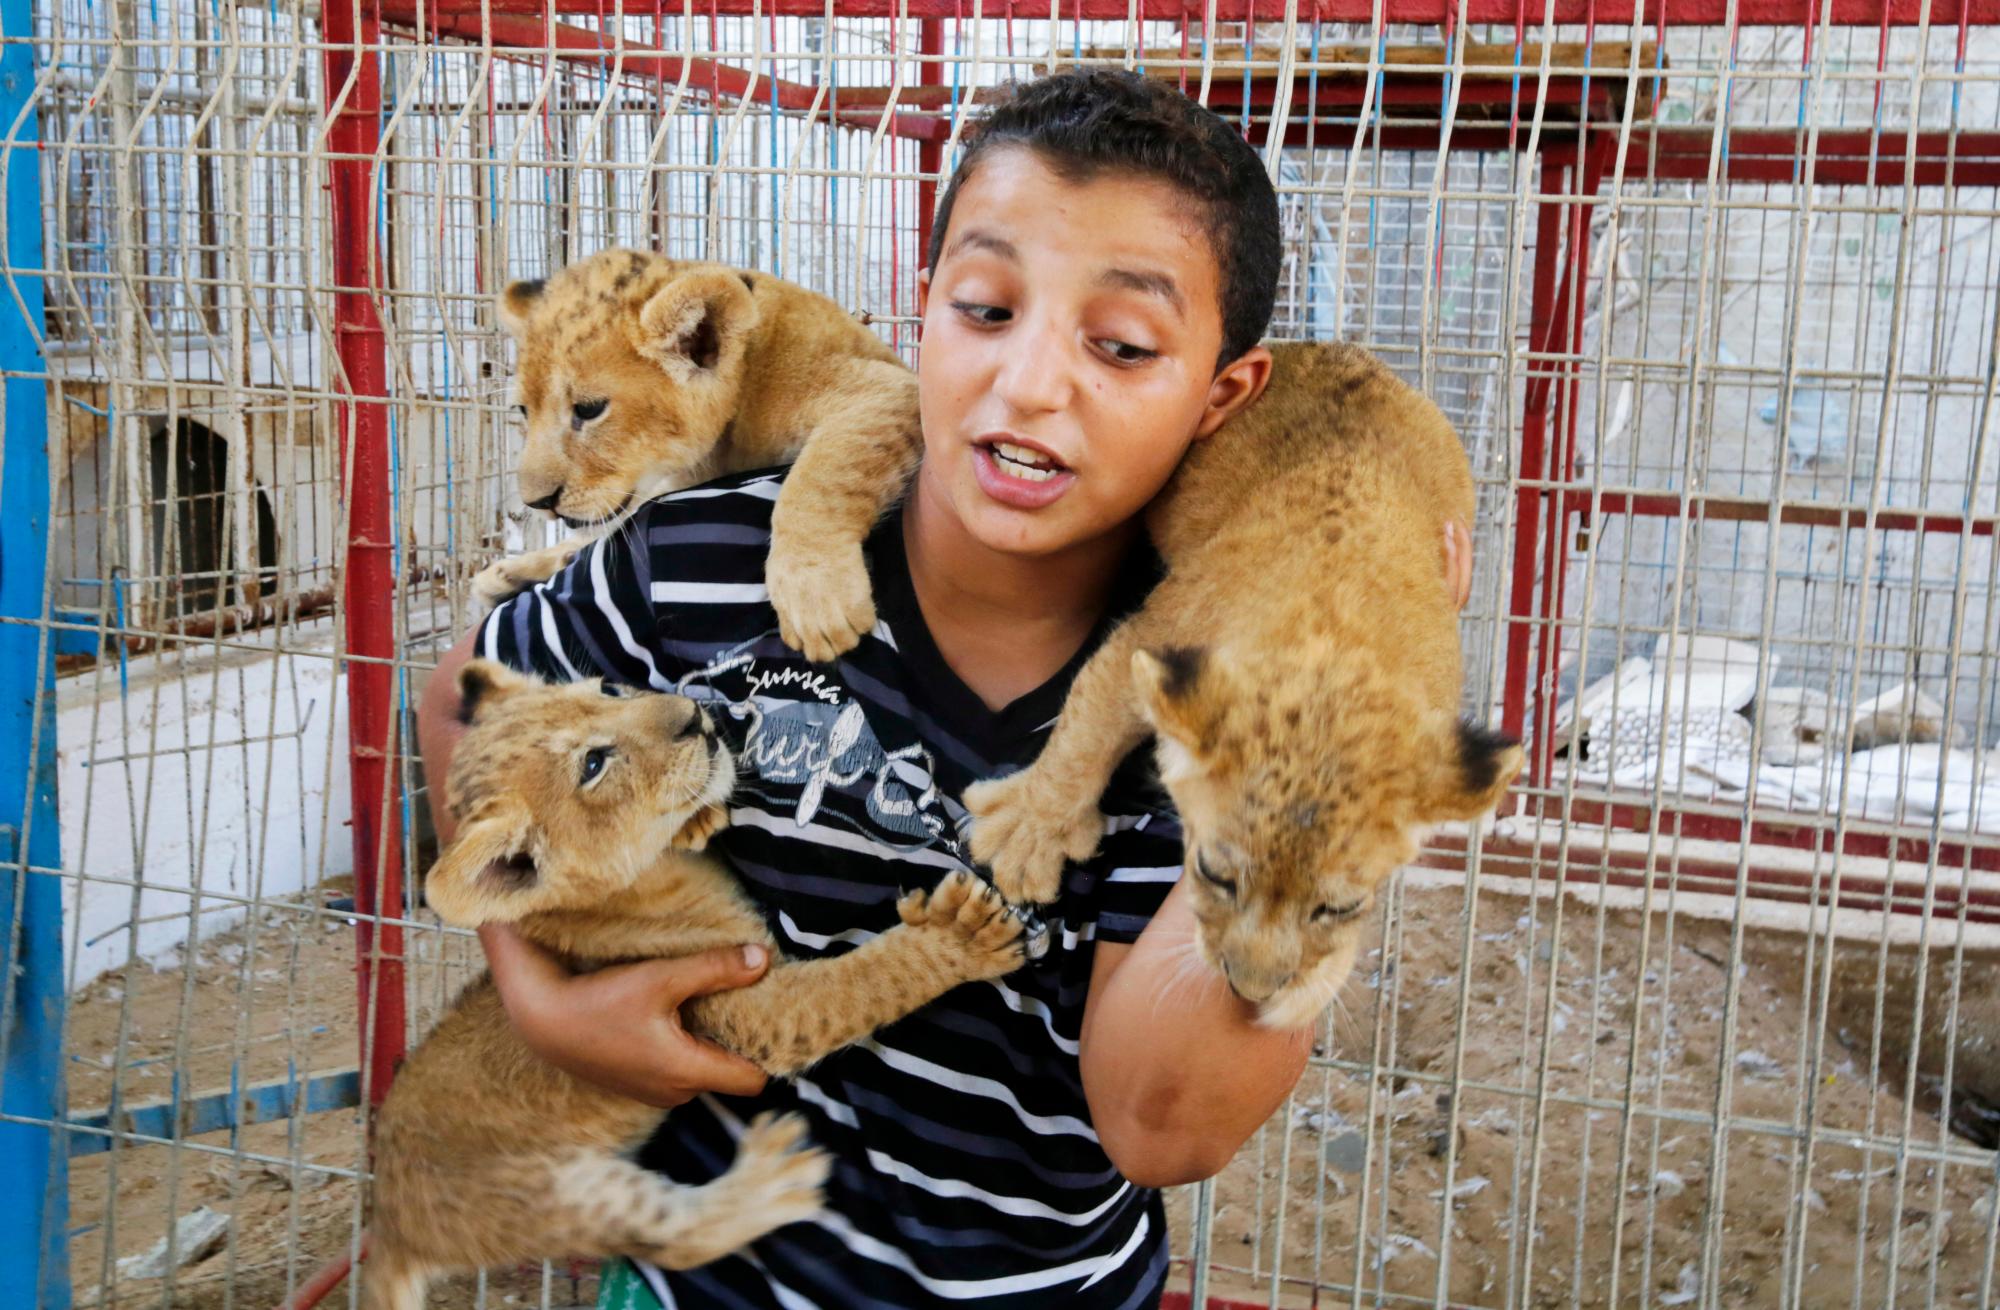 Niños palestinos juegan con tres cachorros de león que nacieron hace unas semanas en un zoológico en el sur de la ciudad de Rafah, en la Franja de Gaza, el martes 10 de septiembre de 2019. Grupos internacionales de bienestar animal han llevado a cabo varias misiones para evacuar animales y aves de zoológicos improvisados en ruinas. Después del frío, la negligencia y los conflictos llevaron a la desaparición de algunos animales.